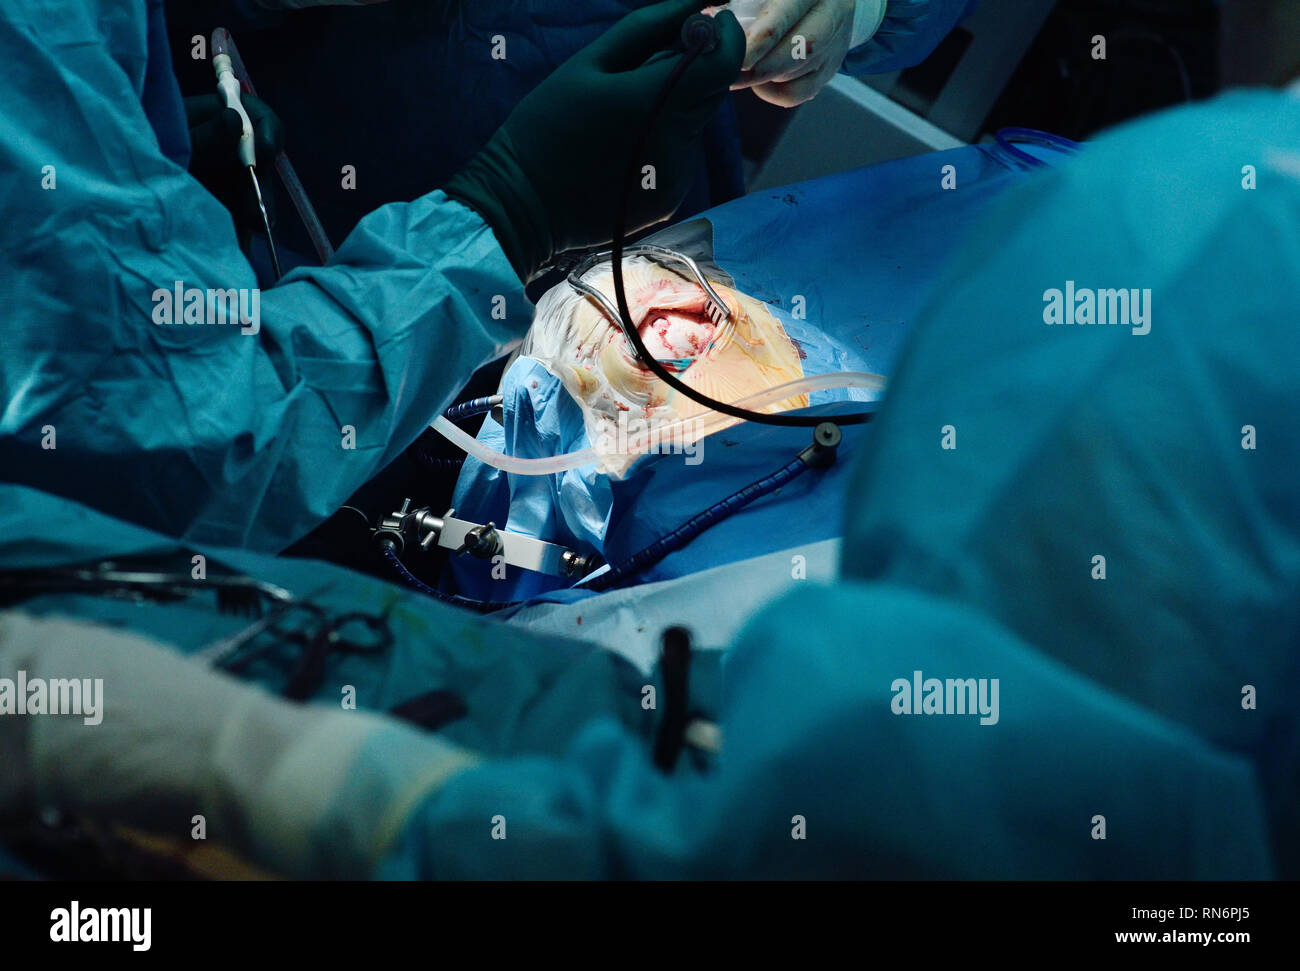 Les neurochirurgiens effectuer une chirurgie pour une tumeur au cerveau d'accise Banque D'Images